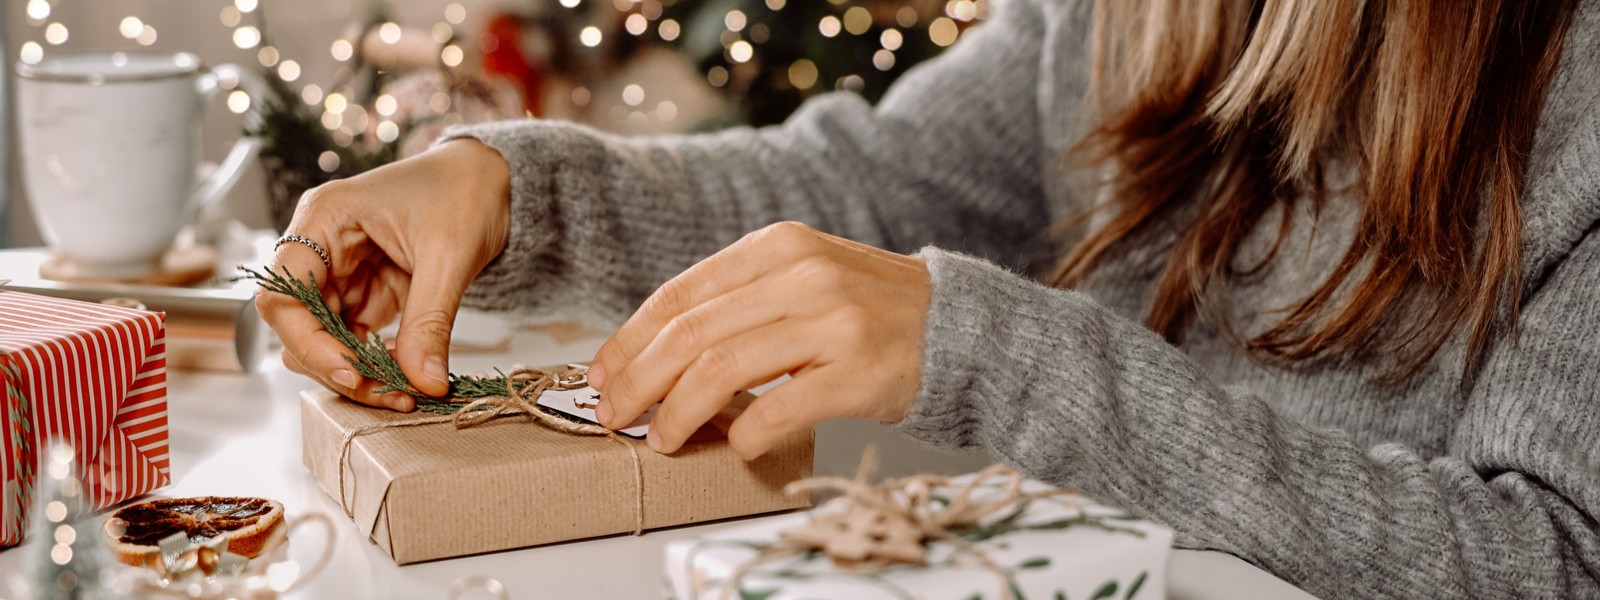 Ein toller Leitfaden zum Einpacken von Geschenken - Wie kann man Geschenke zu Weihnachten originell verpacken?